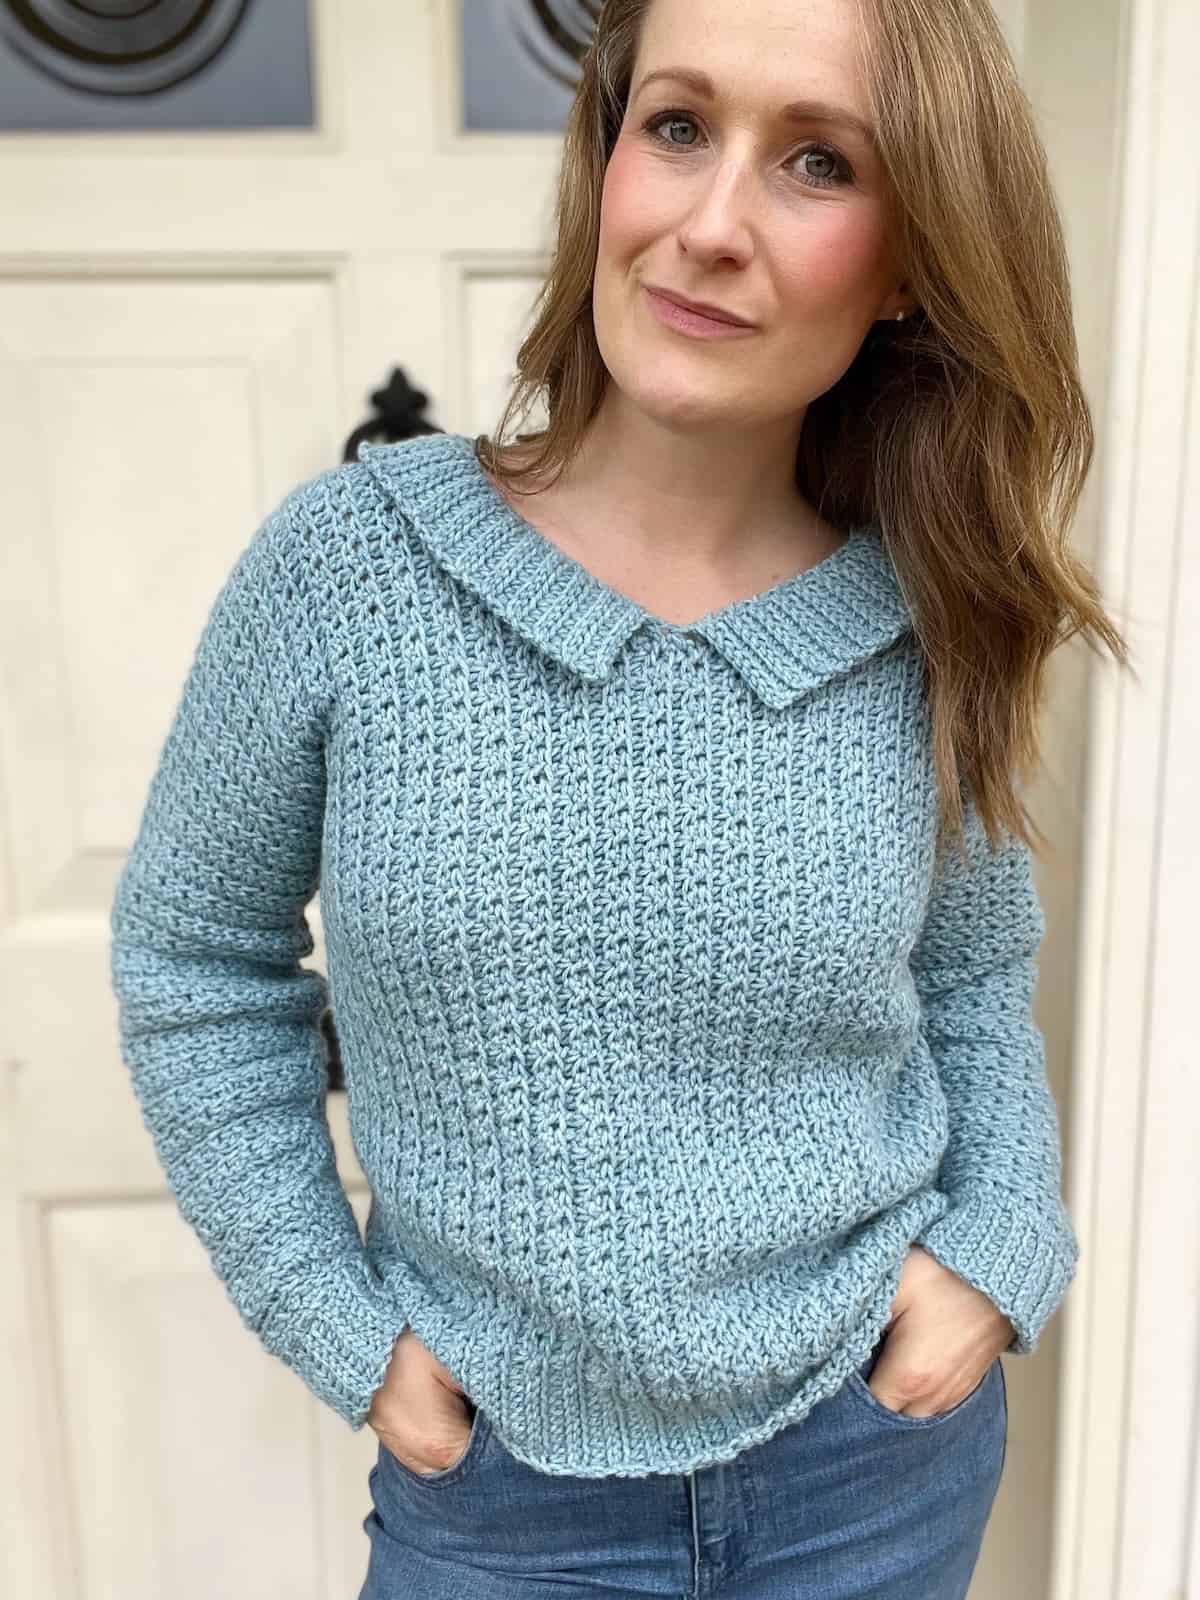 Easy one piece crochet sweater pattern.